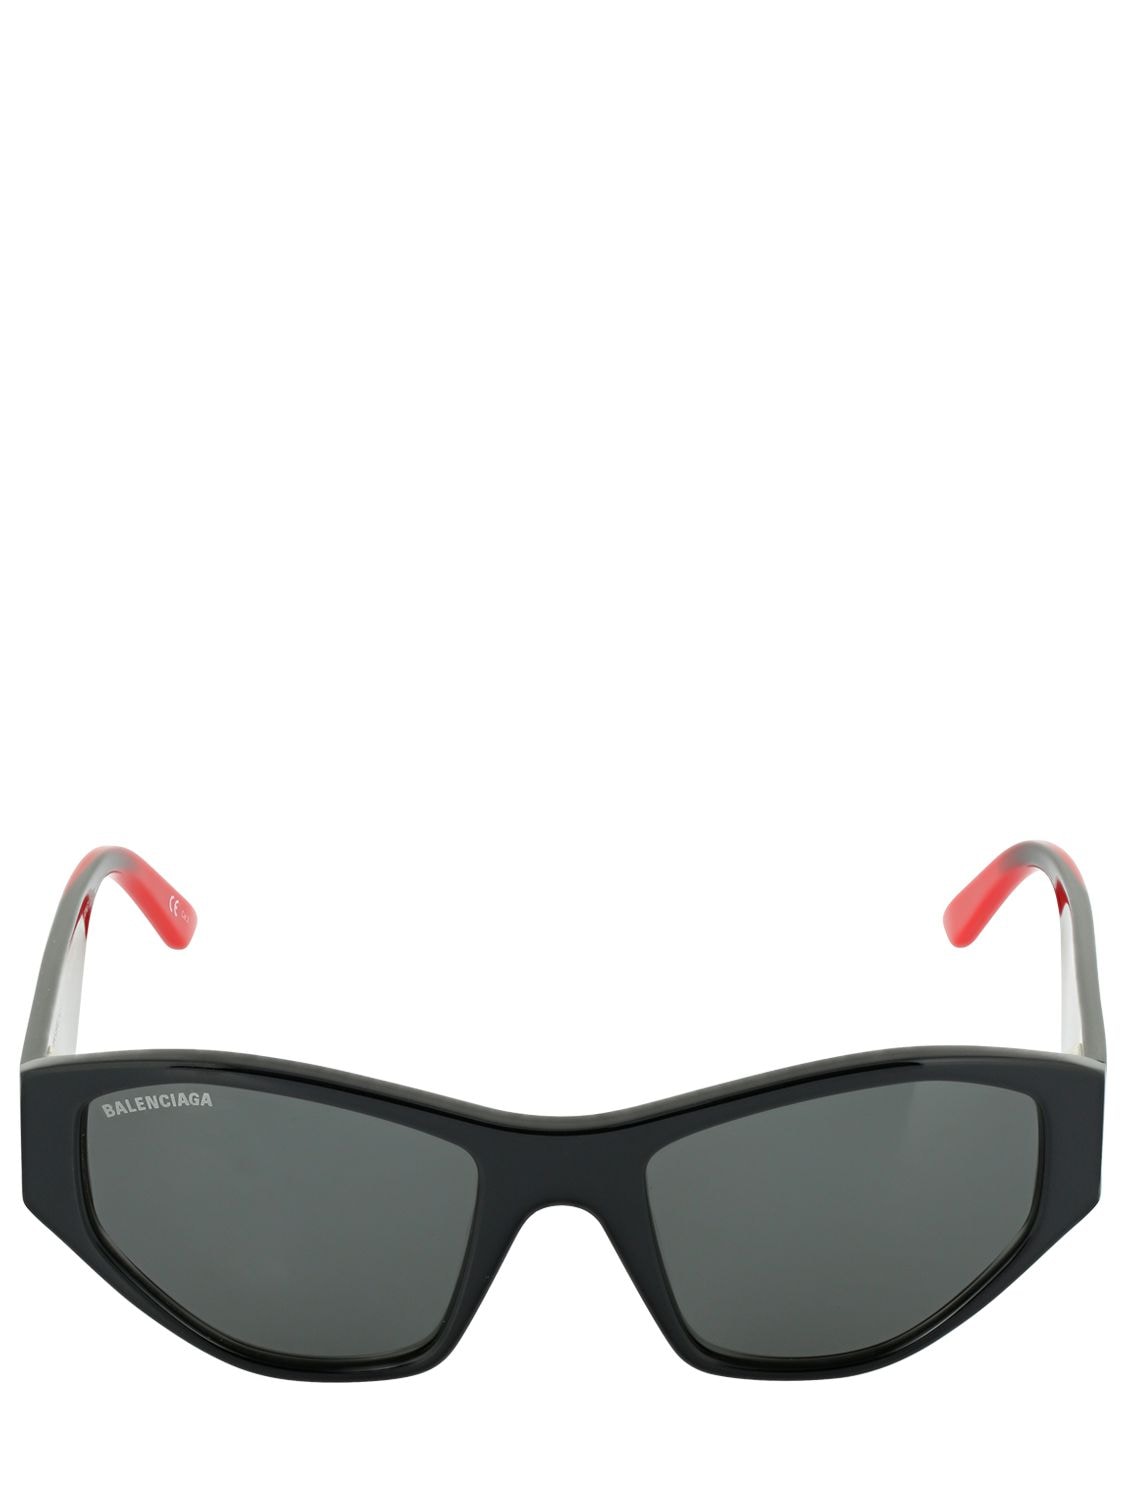 Balenciaga Cut Cat 0097s Acetate Sunglasses In Black,red